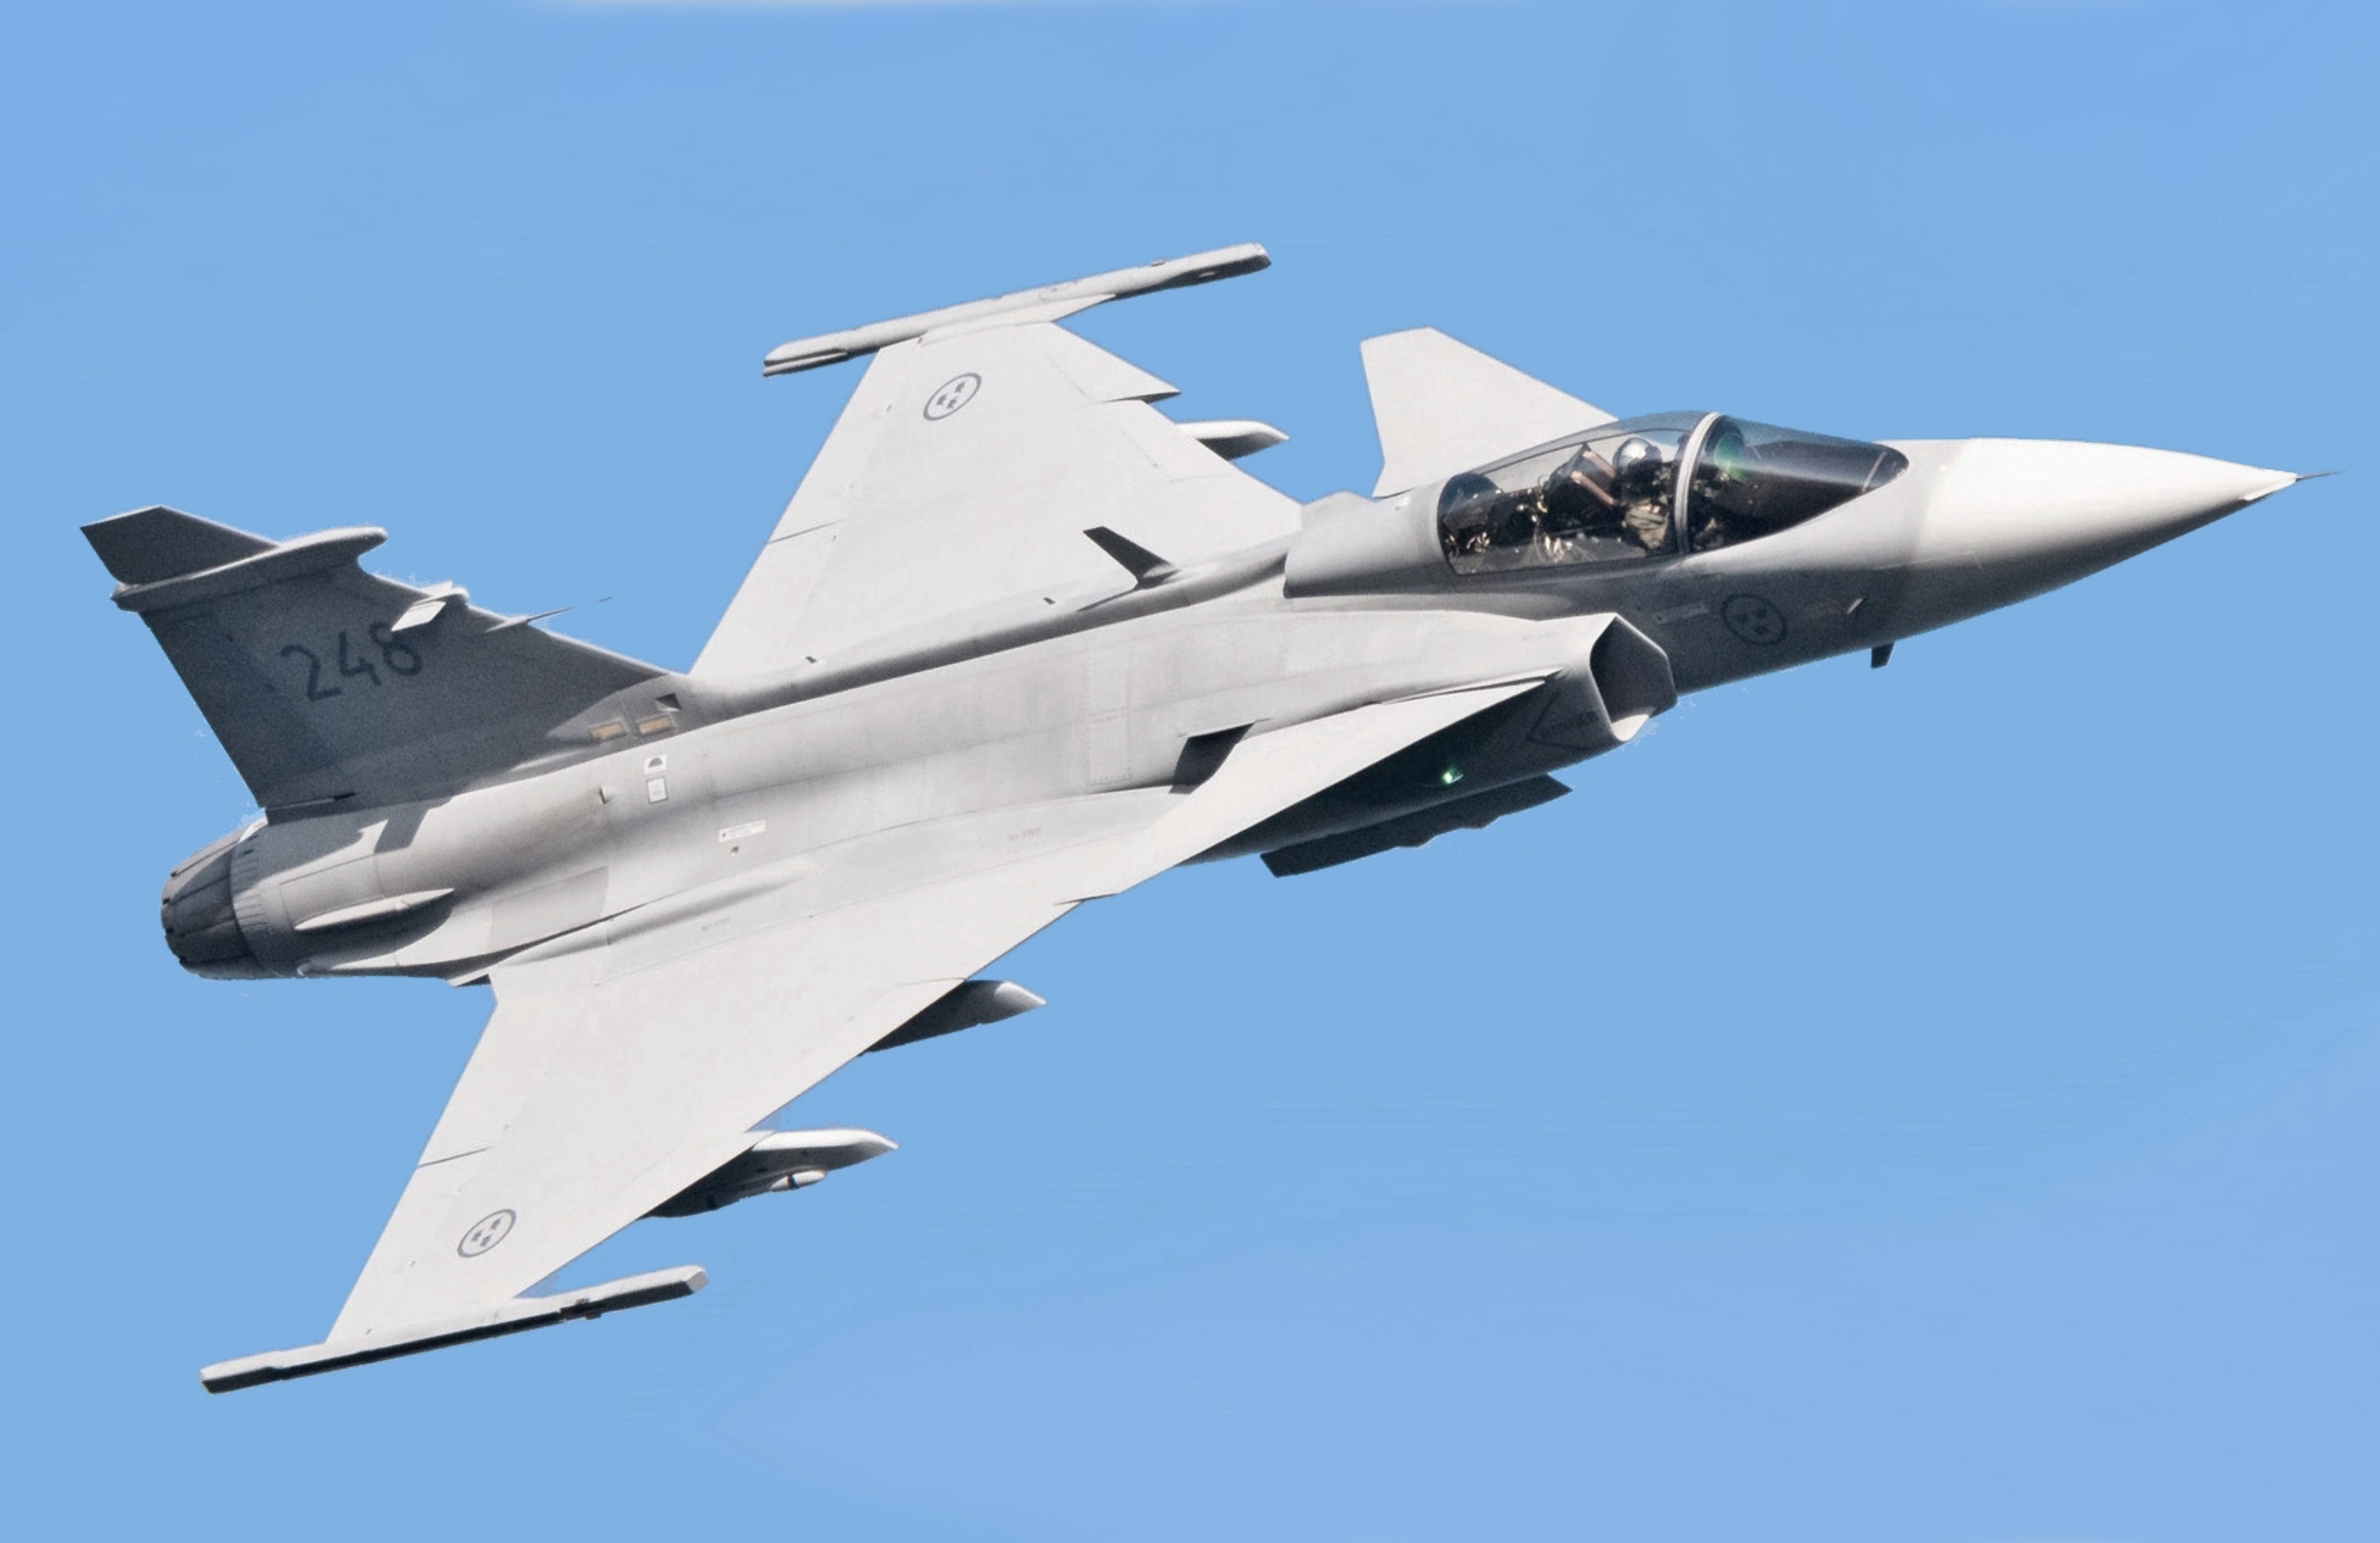 Nicht nur F-16 Fighting Falcon: Die Ukraine will Saab JAS 39 Gripen-Kampfflugzeuge, ukrainische Piloten testen das Flugzeug bereits in Schweden